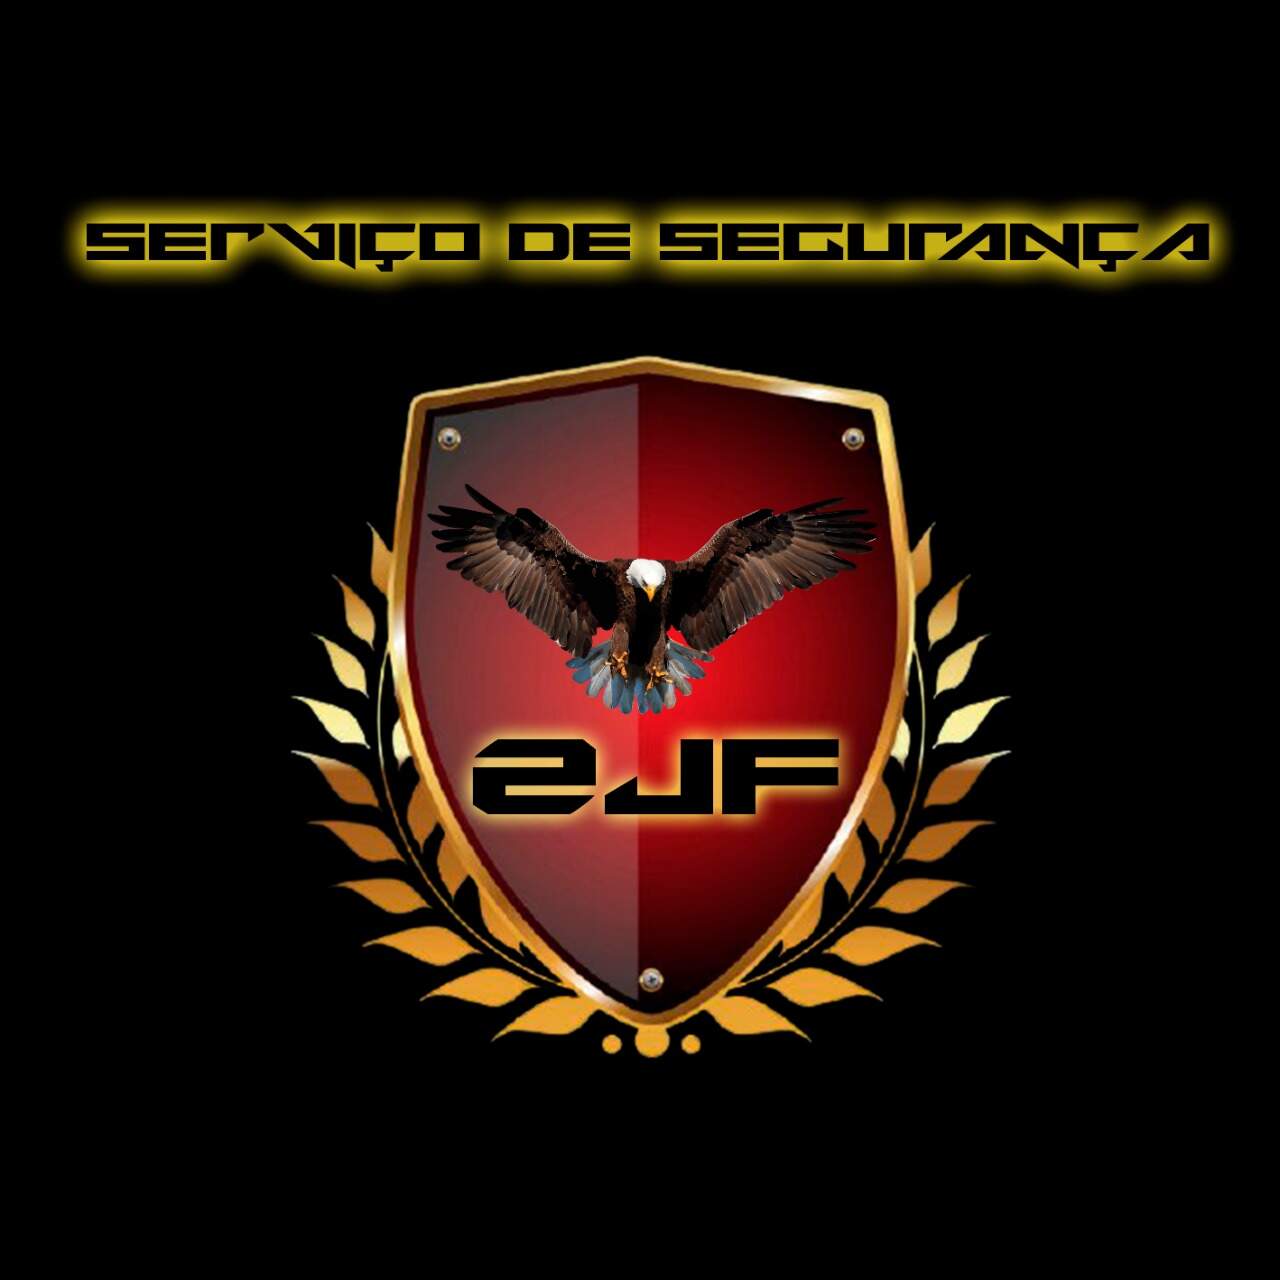 2JF Serviço de Segurança